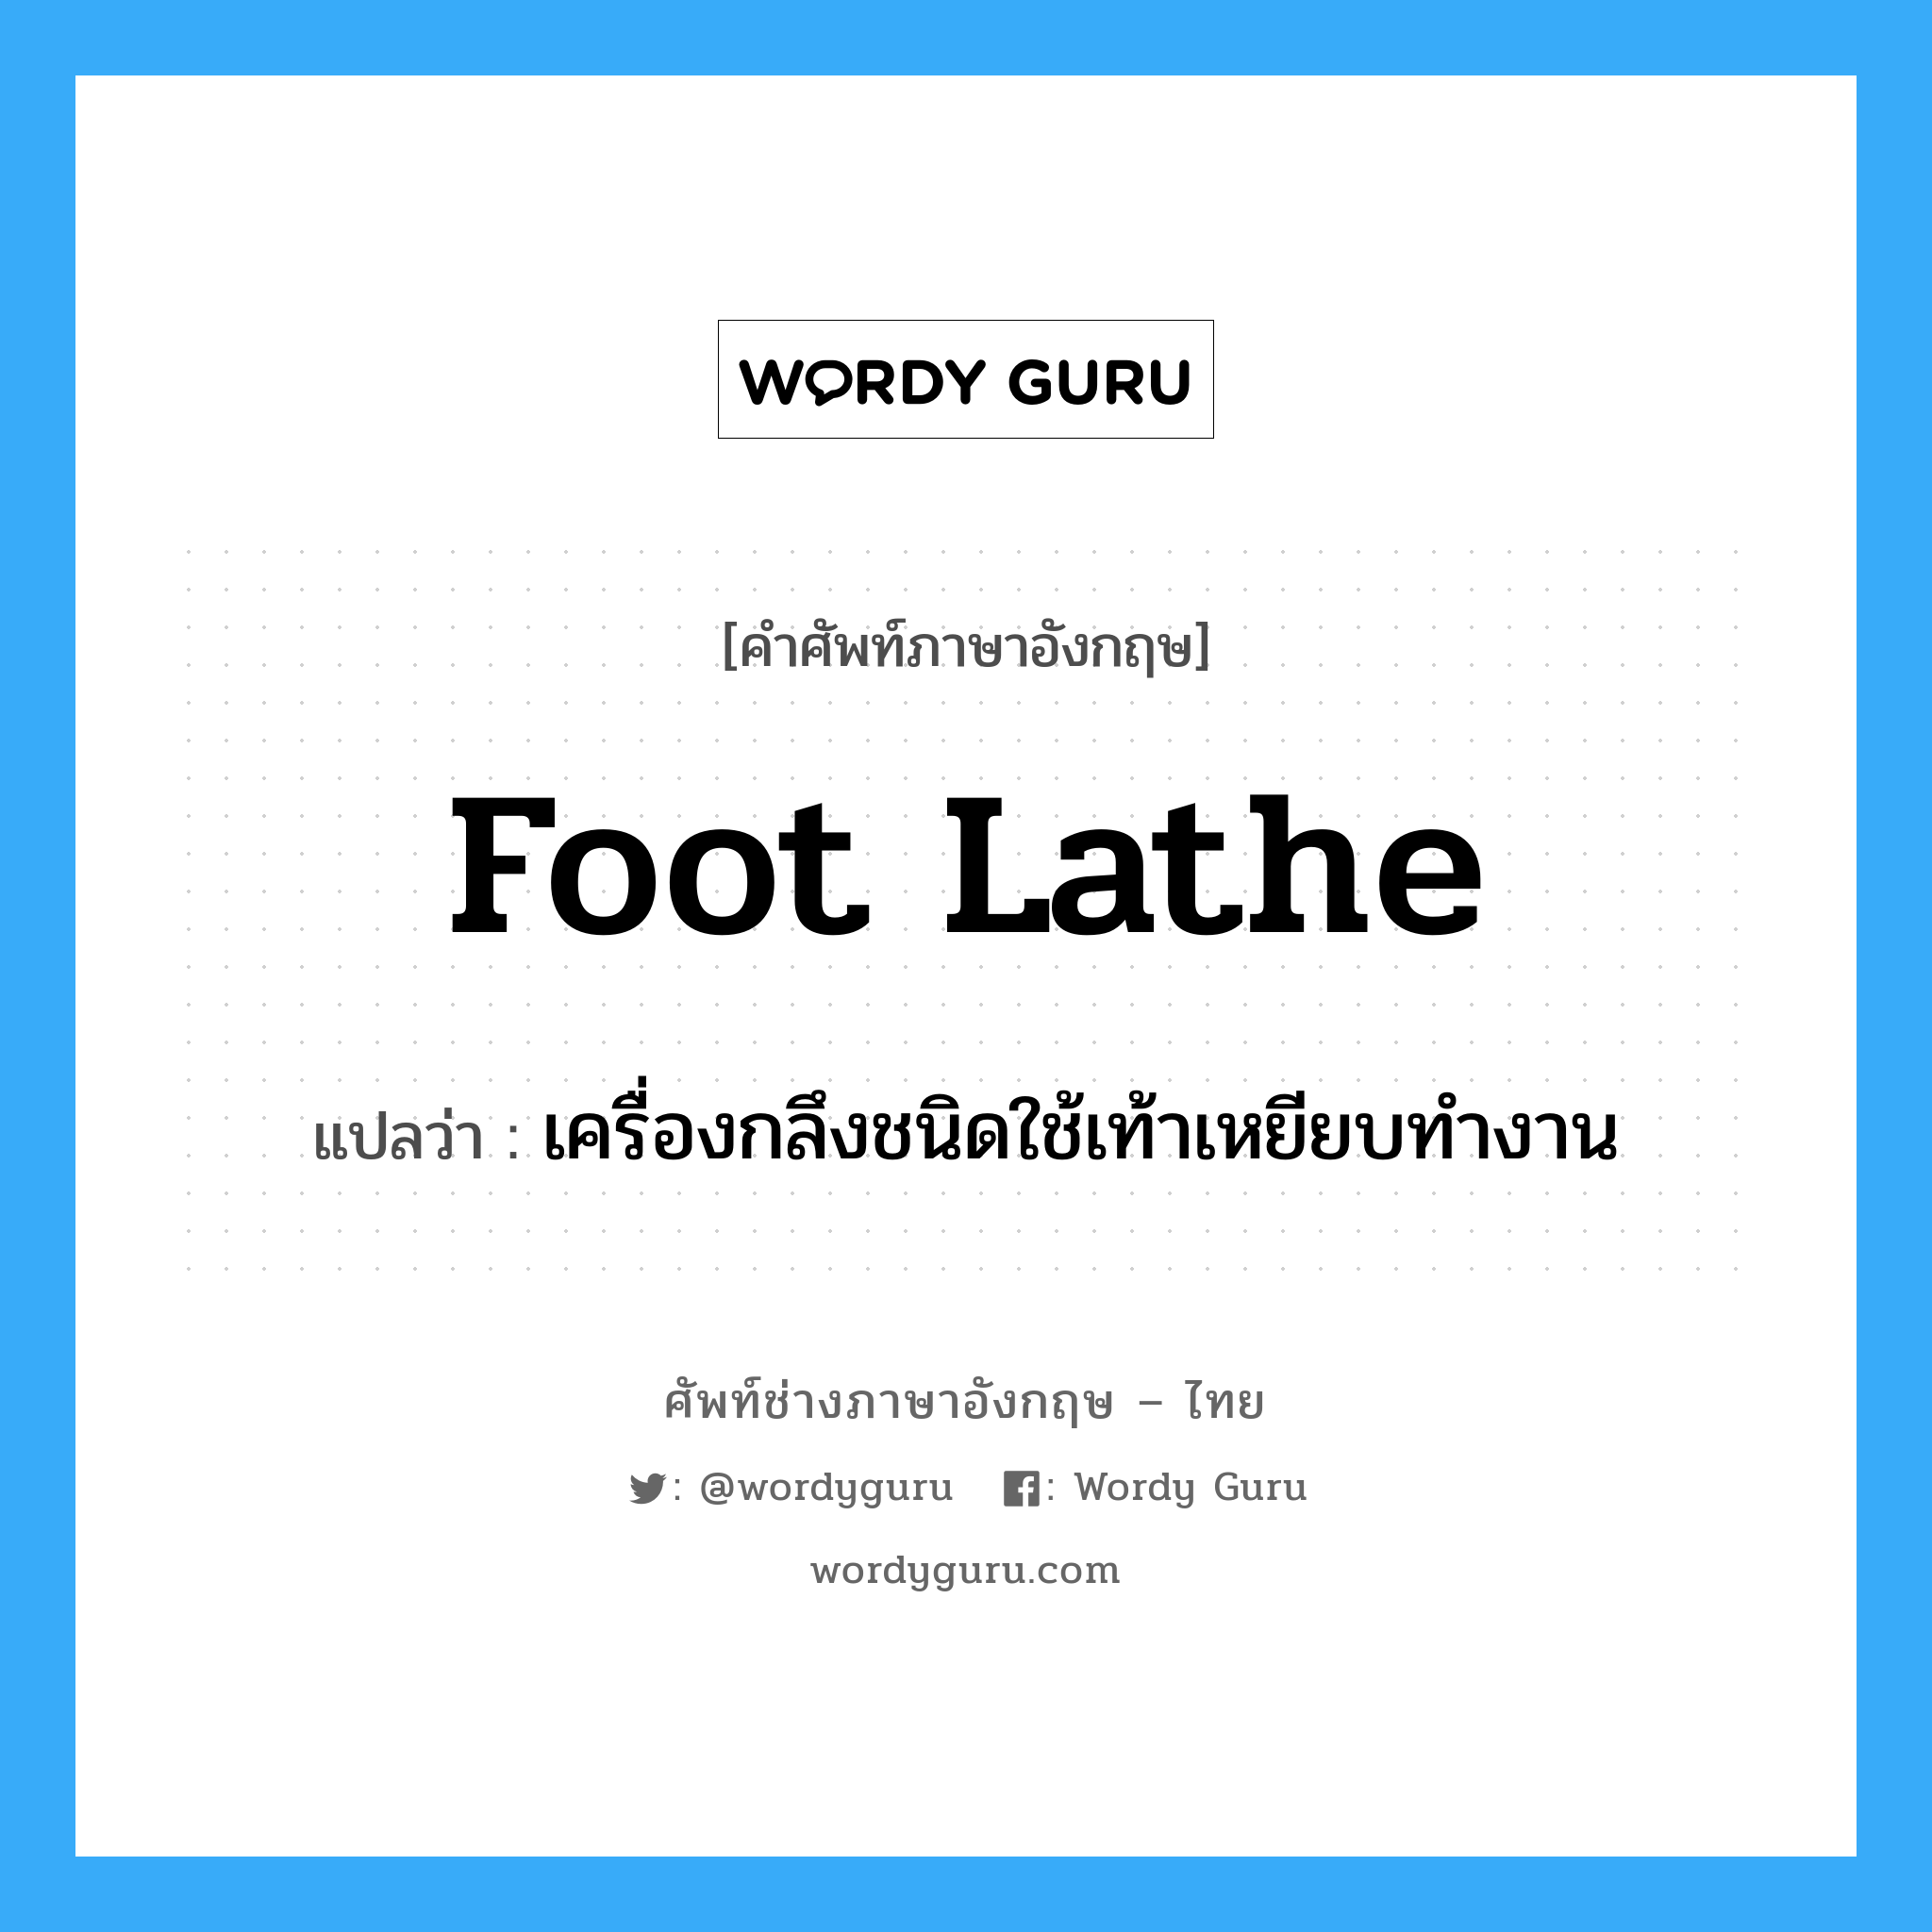 foot lathe แปลว่า?, คำศัพท์ช่างภาษาอังกฤษ - ไทย foot lathe คำศัพท์ภาษาอังกฤษ foot lathe แปลว่า เครื่องกลึงชนิดใช้เท้าเหยียบทำงาน